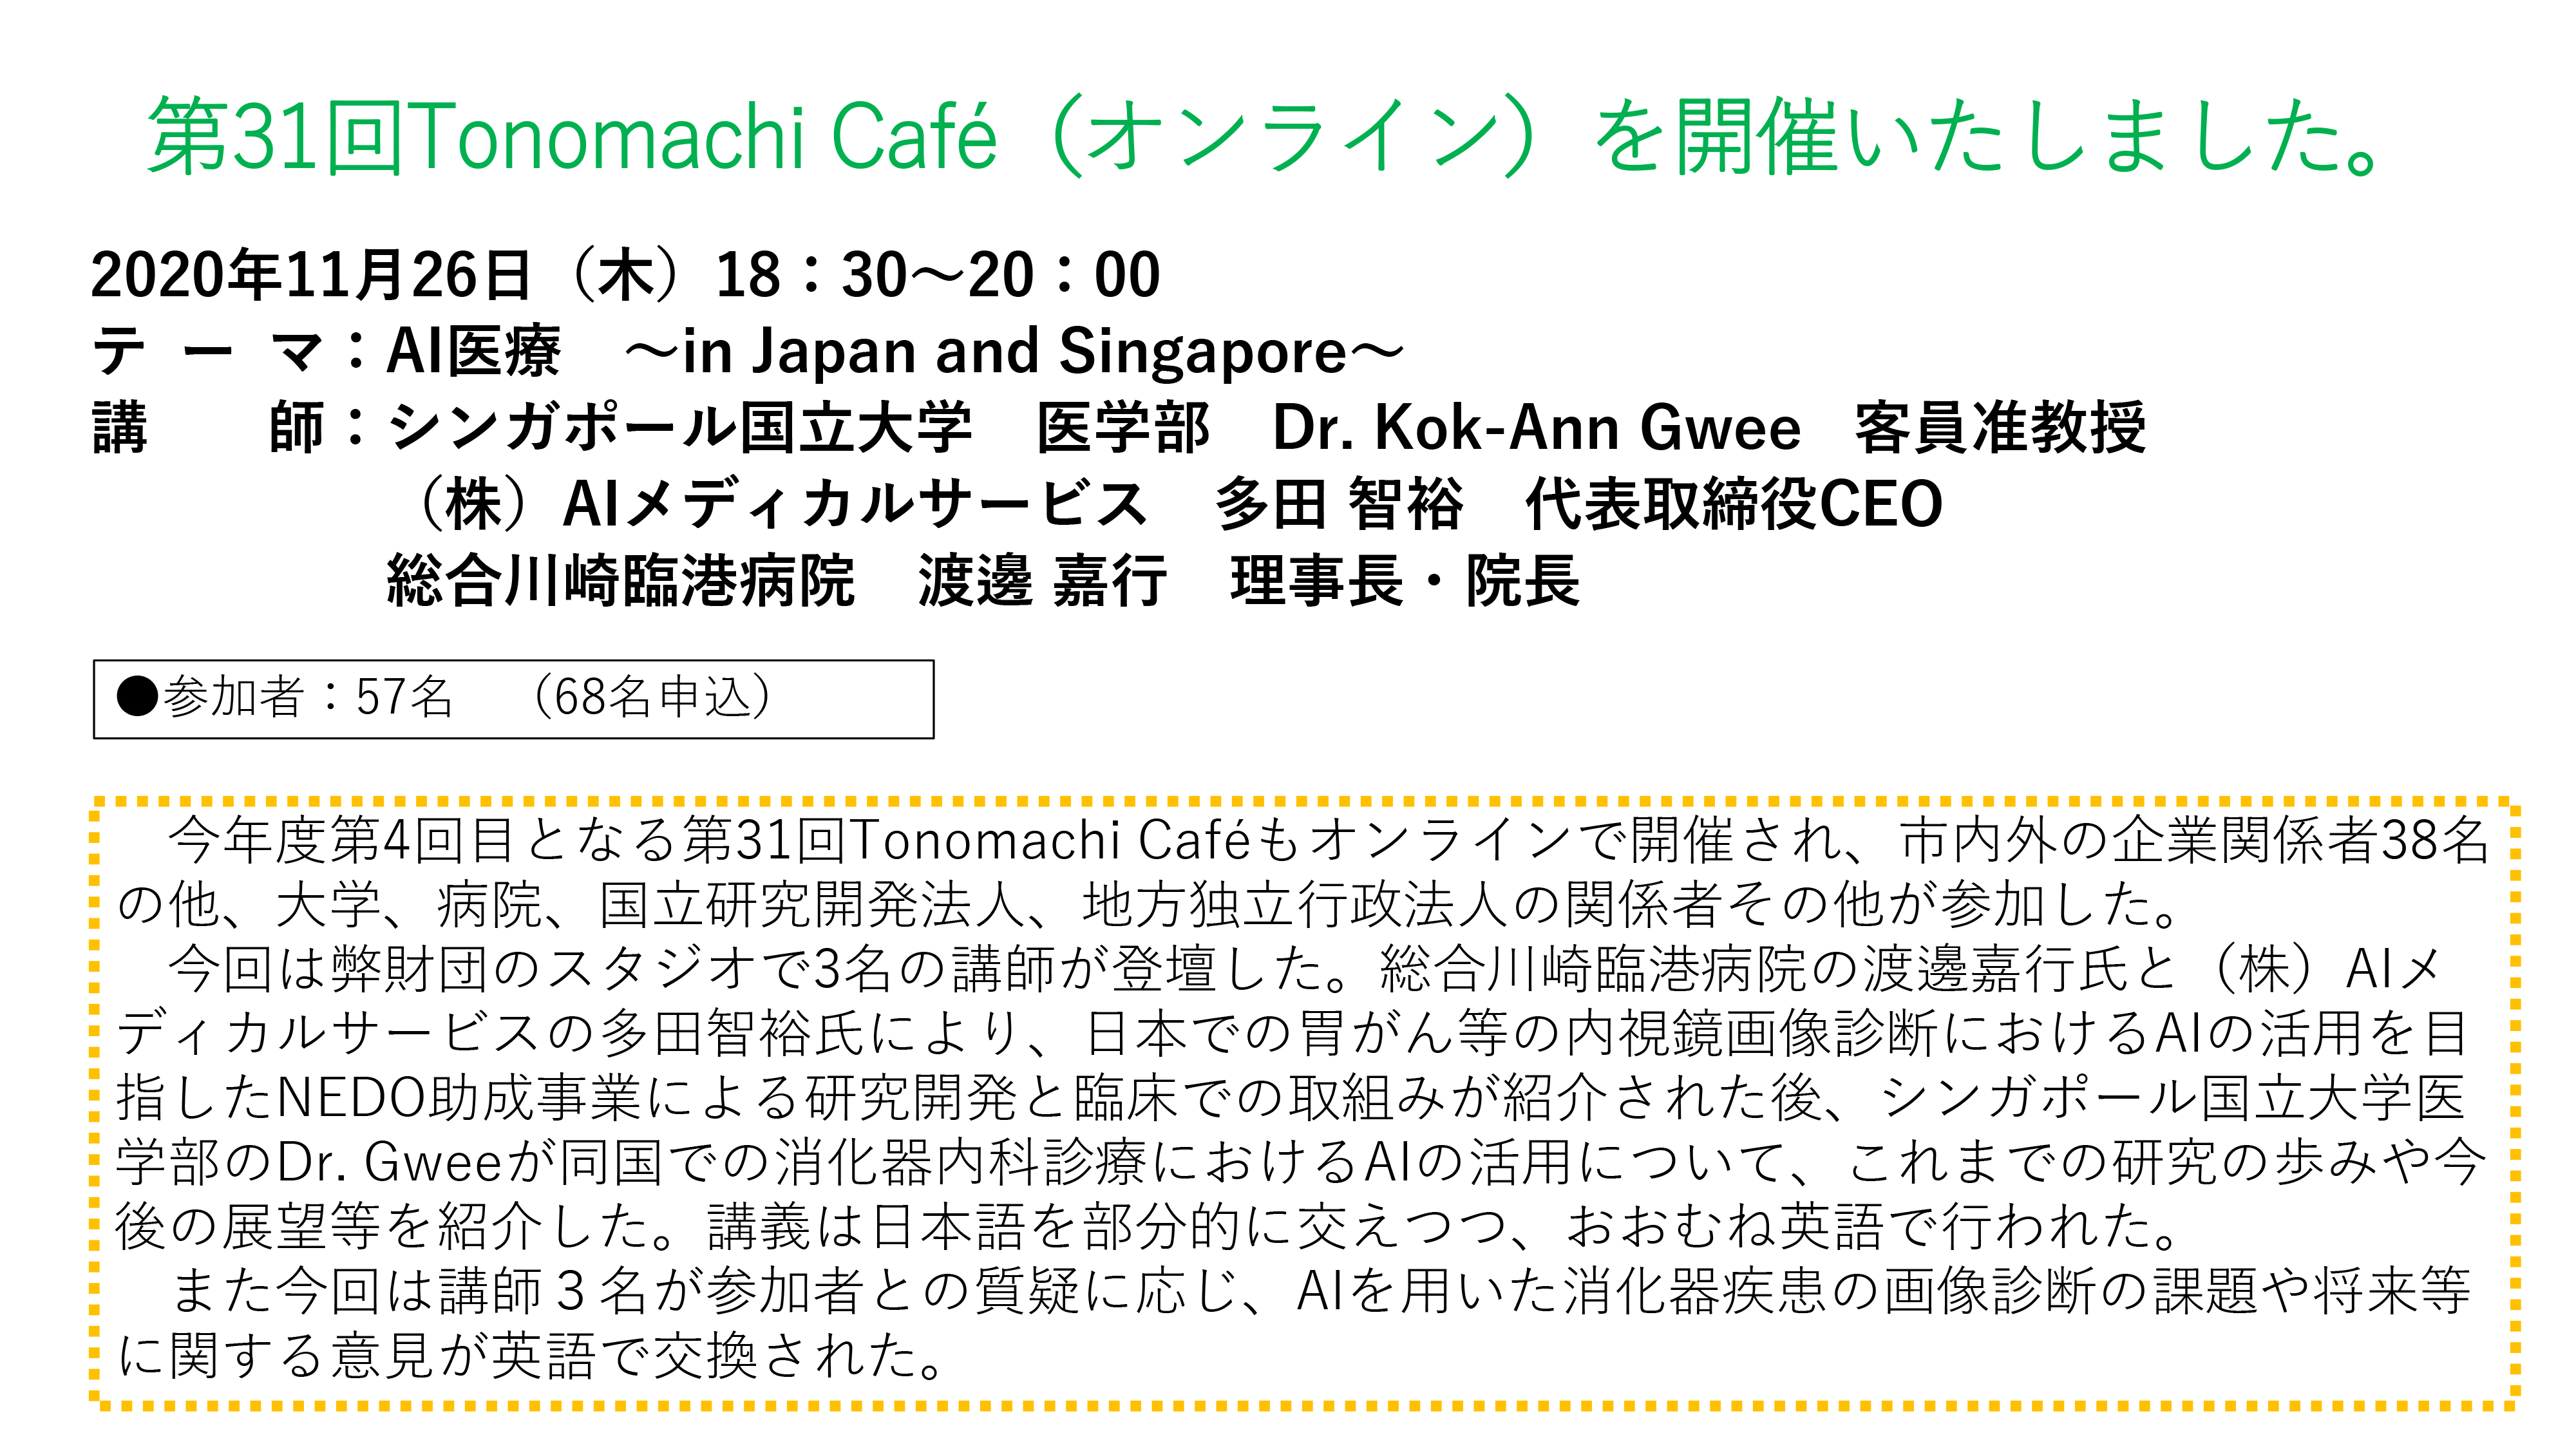 The 31th Tonomachi café online version image